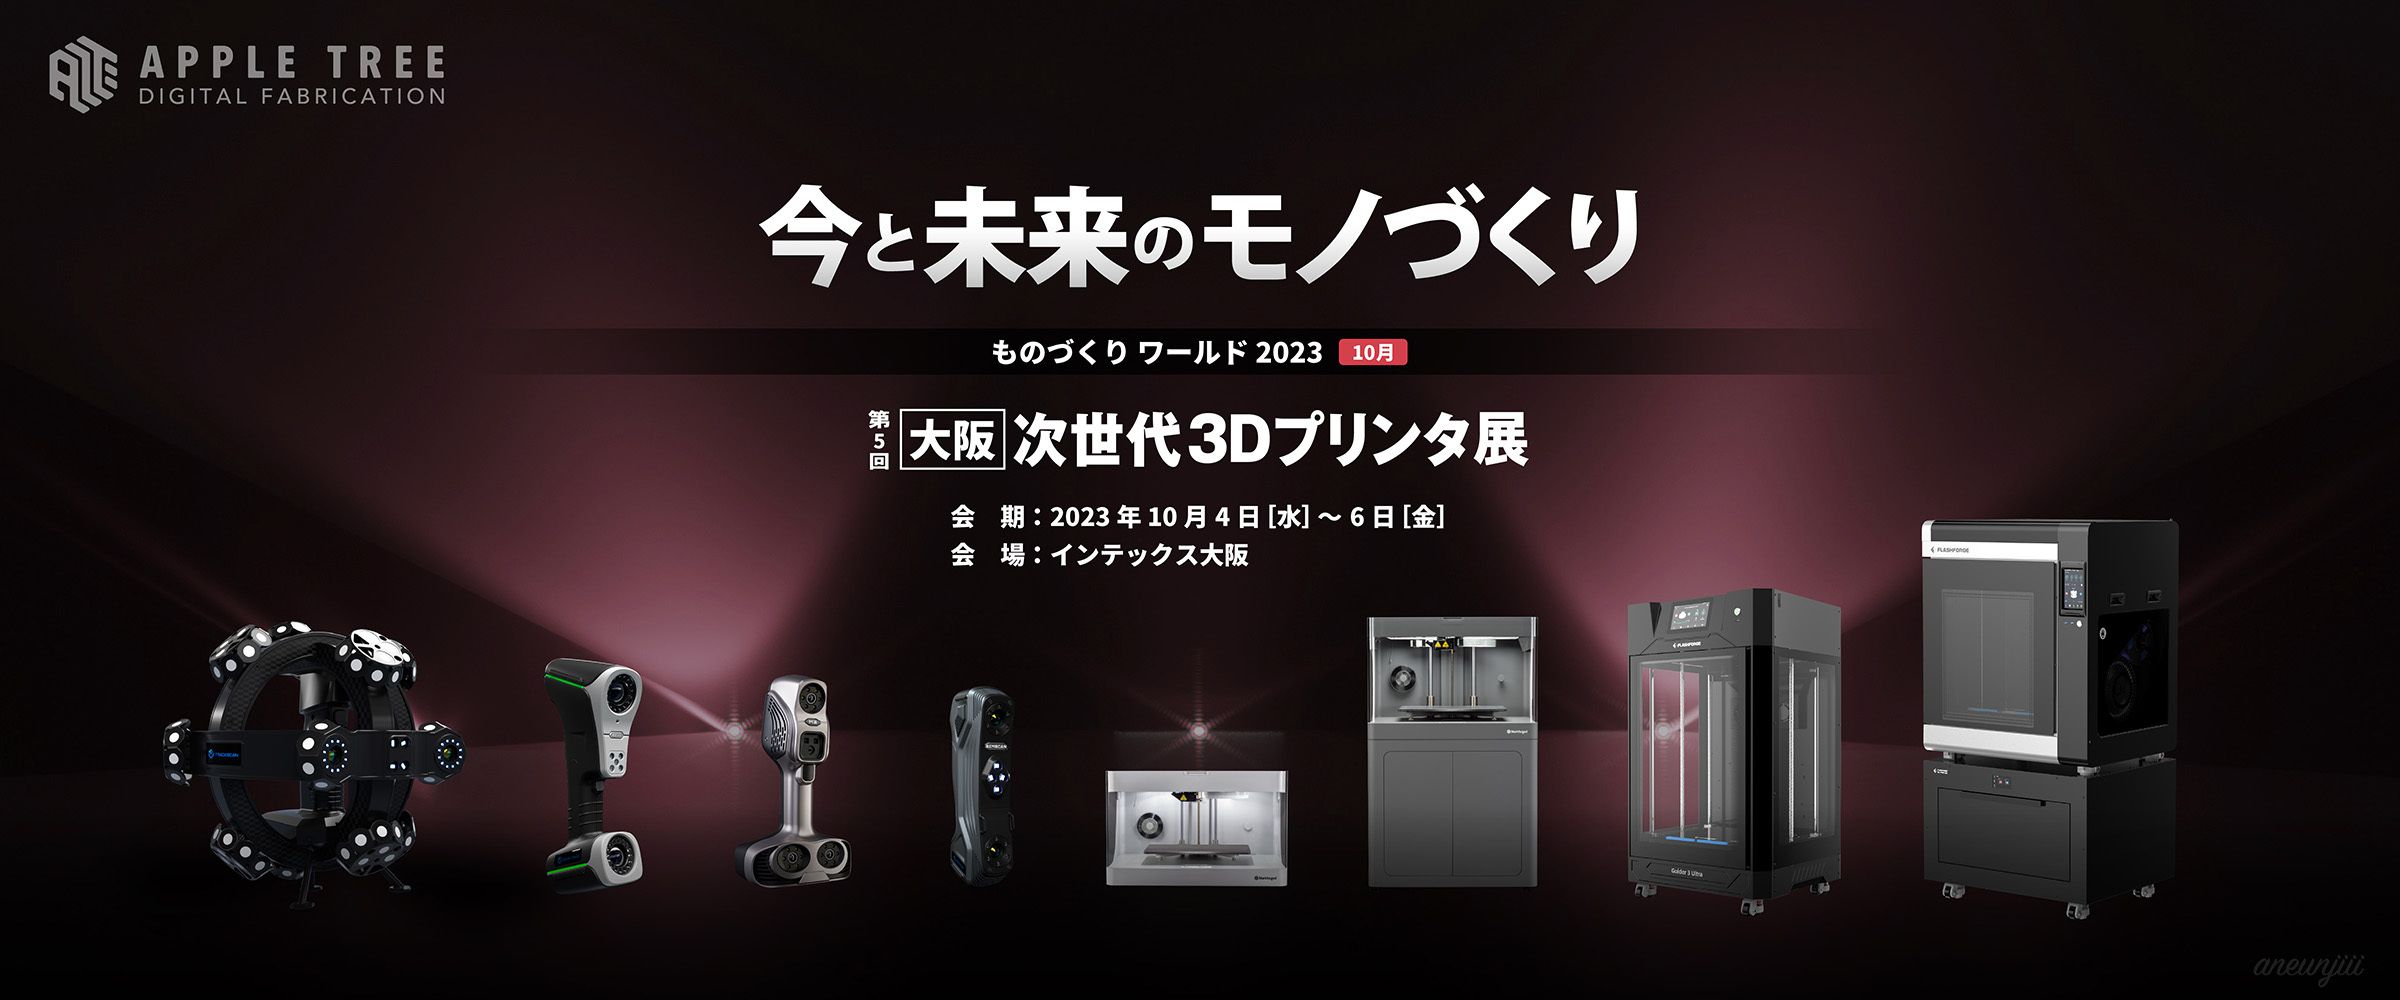 第5回次世代3Dプリンタ展・AM Japan2023(インテックス大阪)に出展